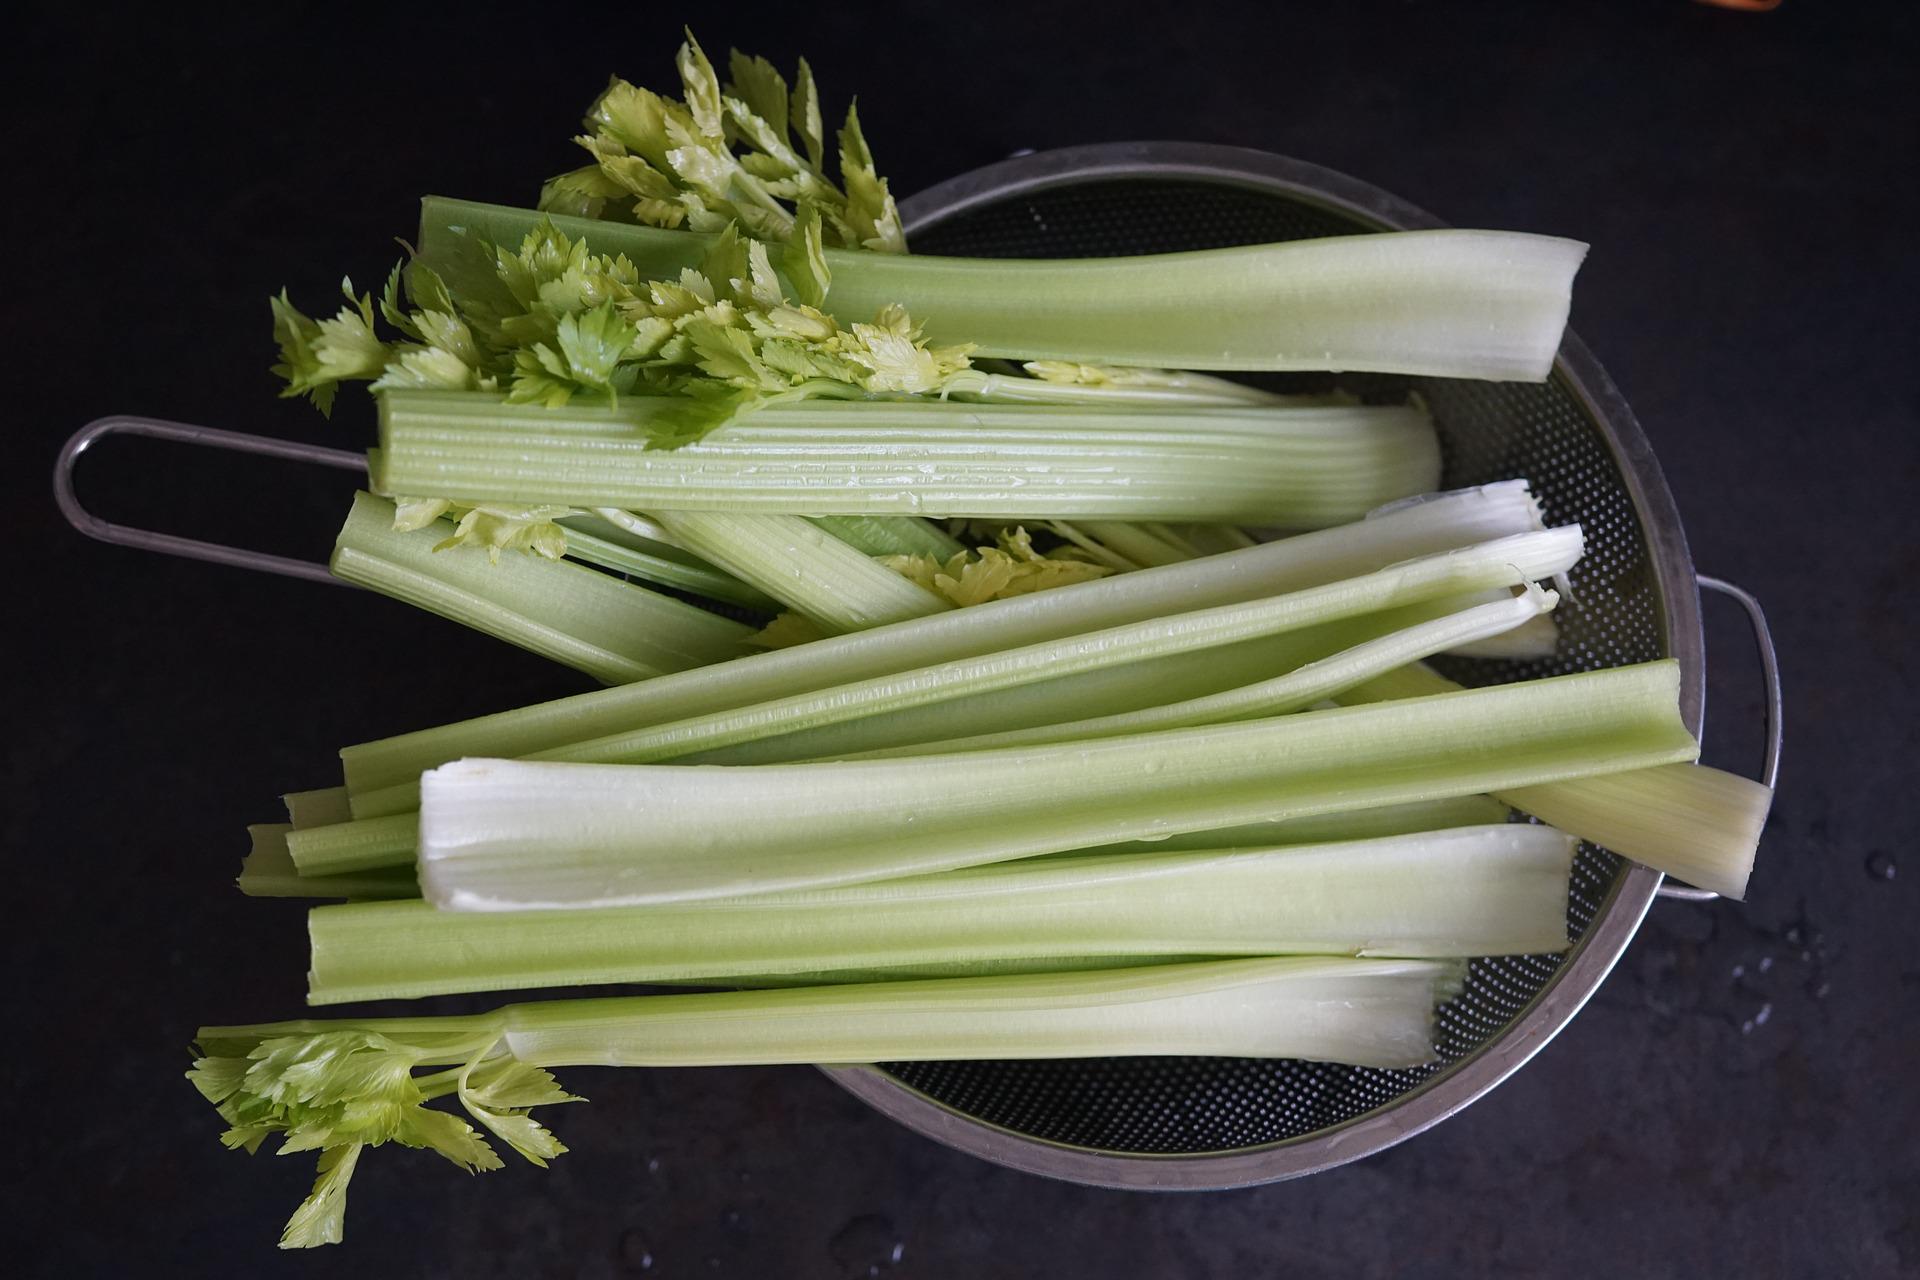 Зелёные овощи общей массой до 300 граммов можно спокойно есть перед сном, не переживая о наборе веса. Фото © Pixabay / inetaLi